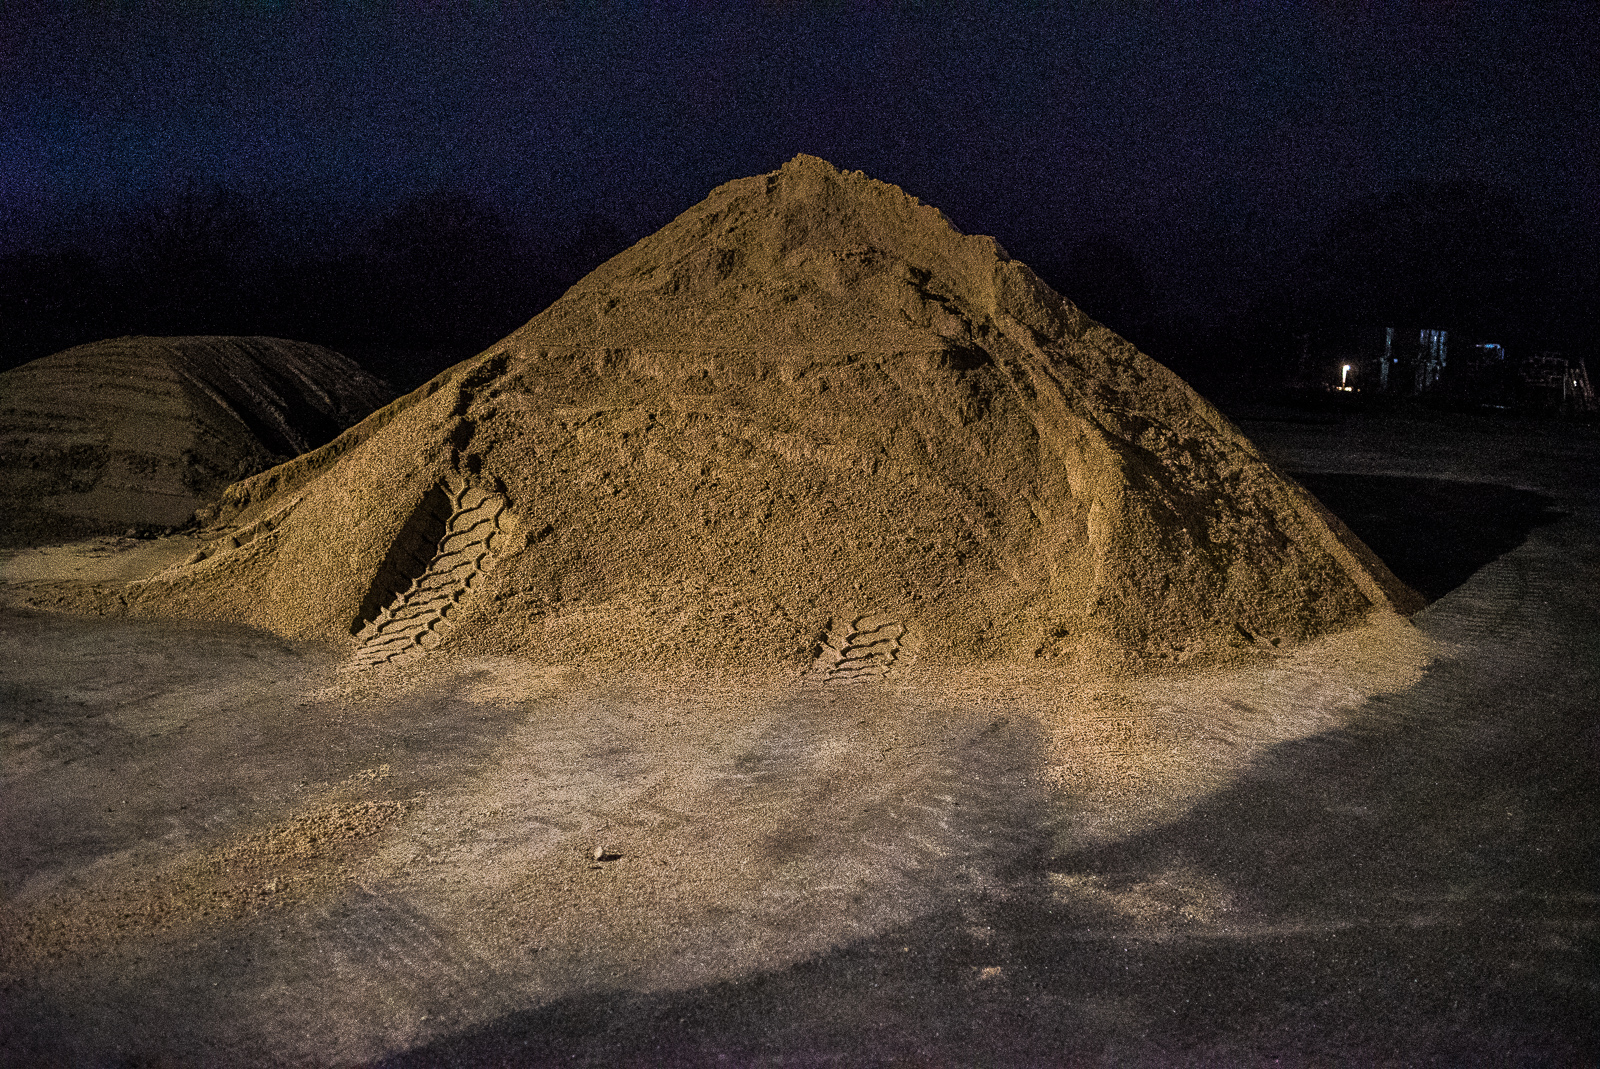 Nachtaufnahme: Riesiger Sandhaufen mit Reifenspuren